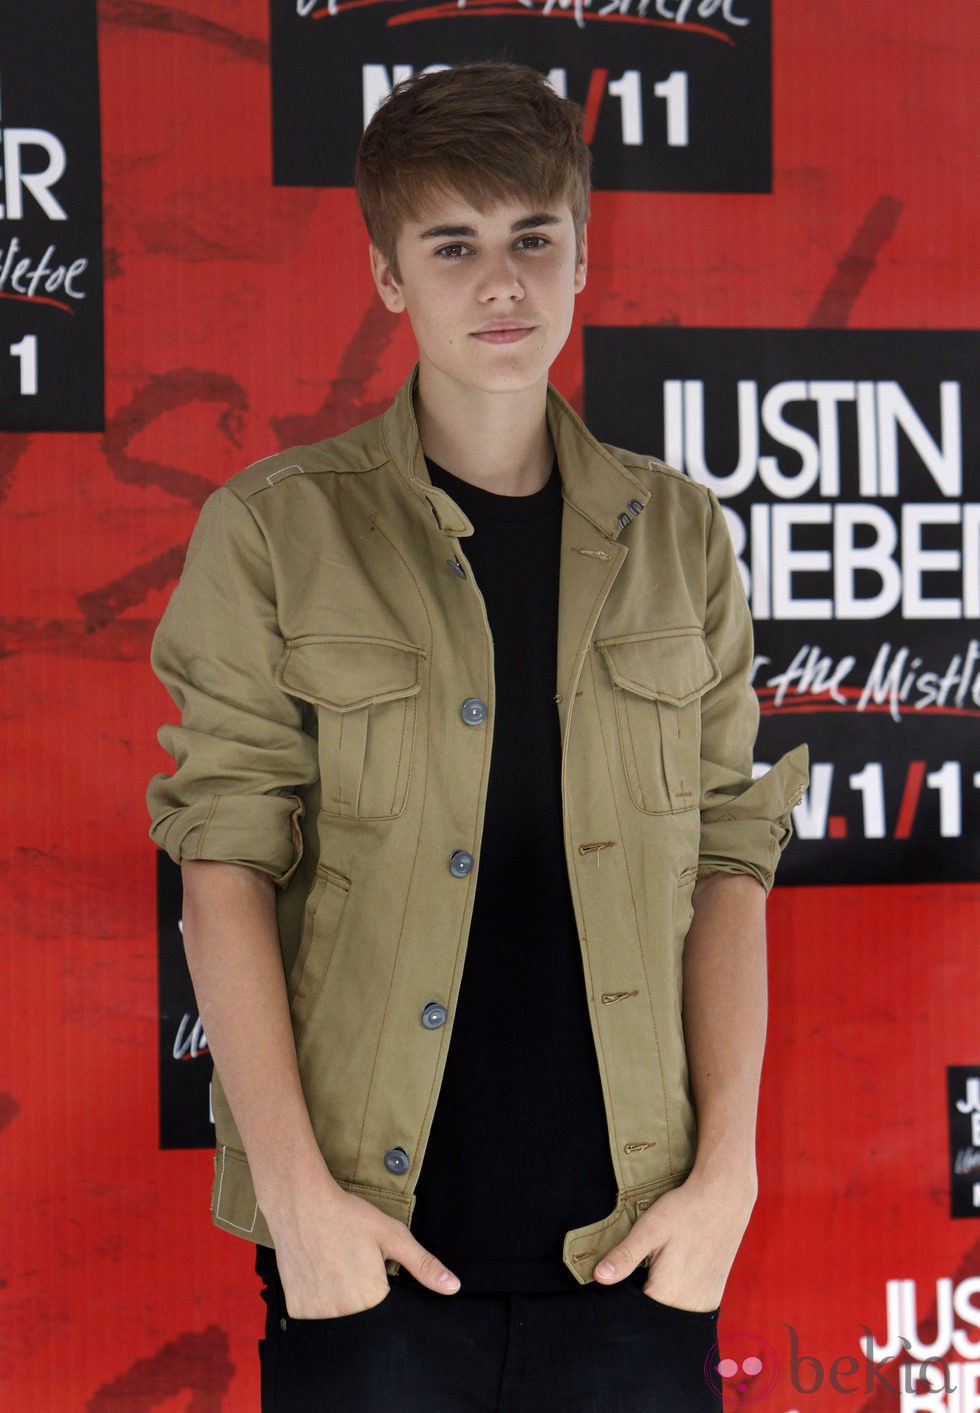 Justin Bieber en el photocall previo a su concierto en México